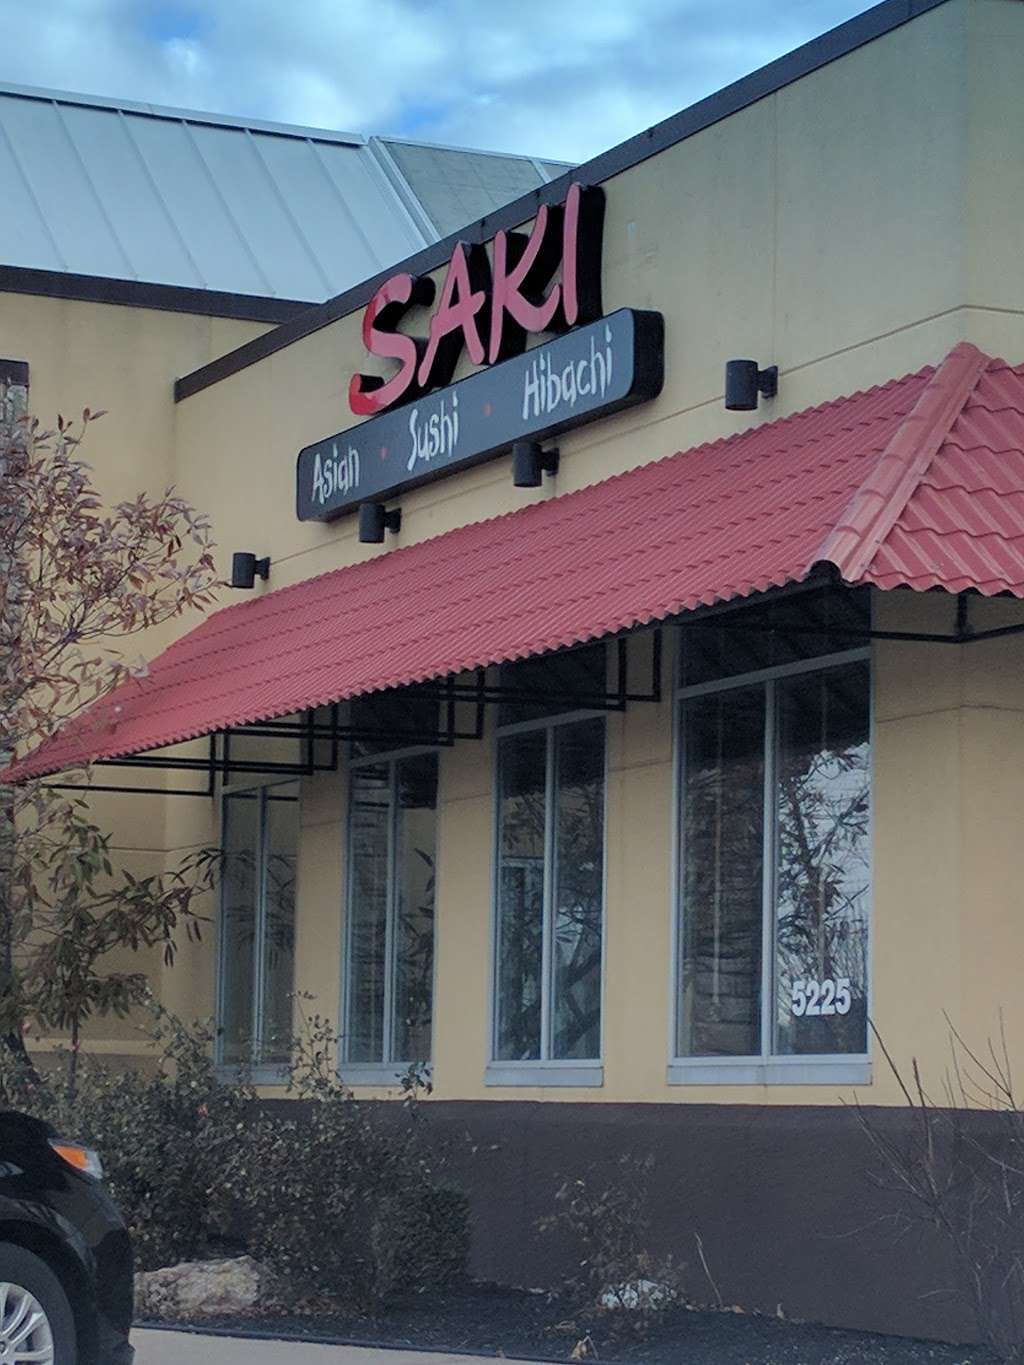 Saki Asian Restaurant | 5225 NW 64th St, Kansas City, MO 64151 | Phone: (816) 584-8888